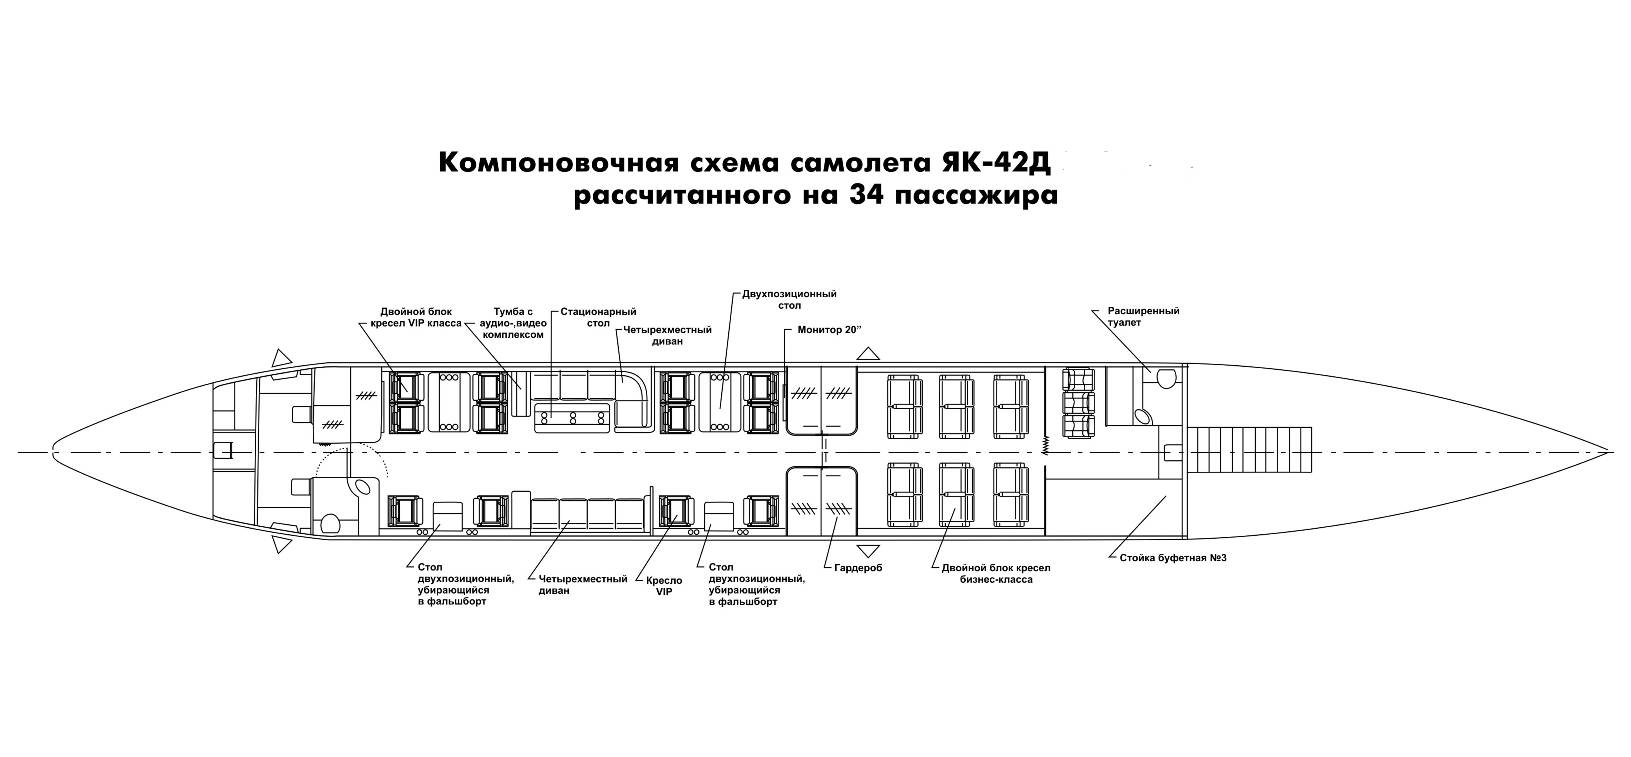 Технические характеристики и схема салона ту-154